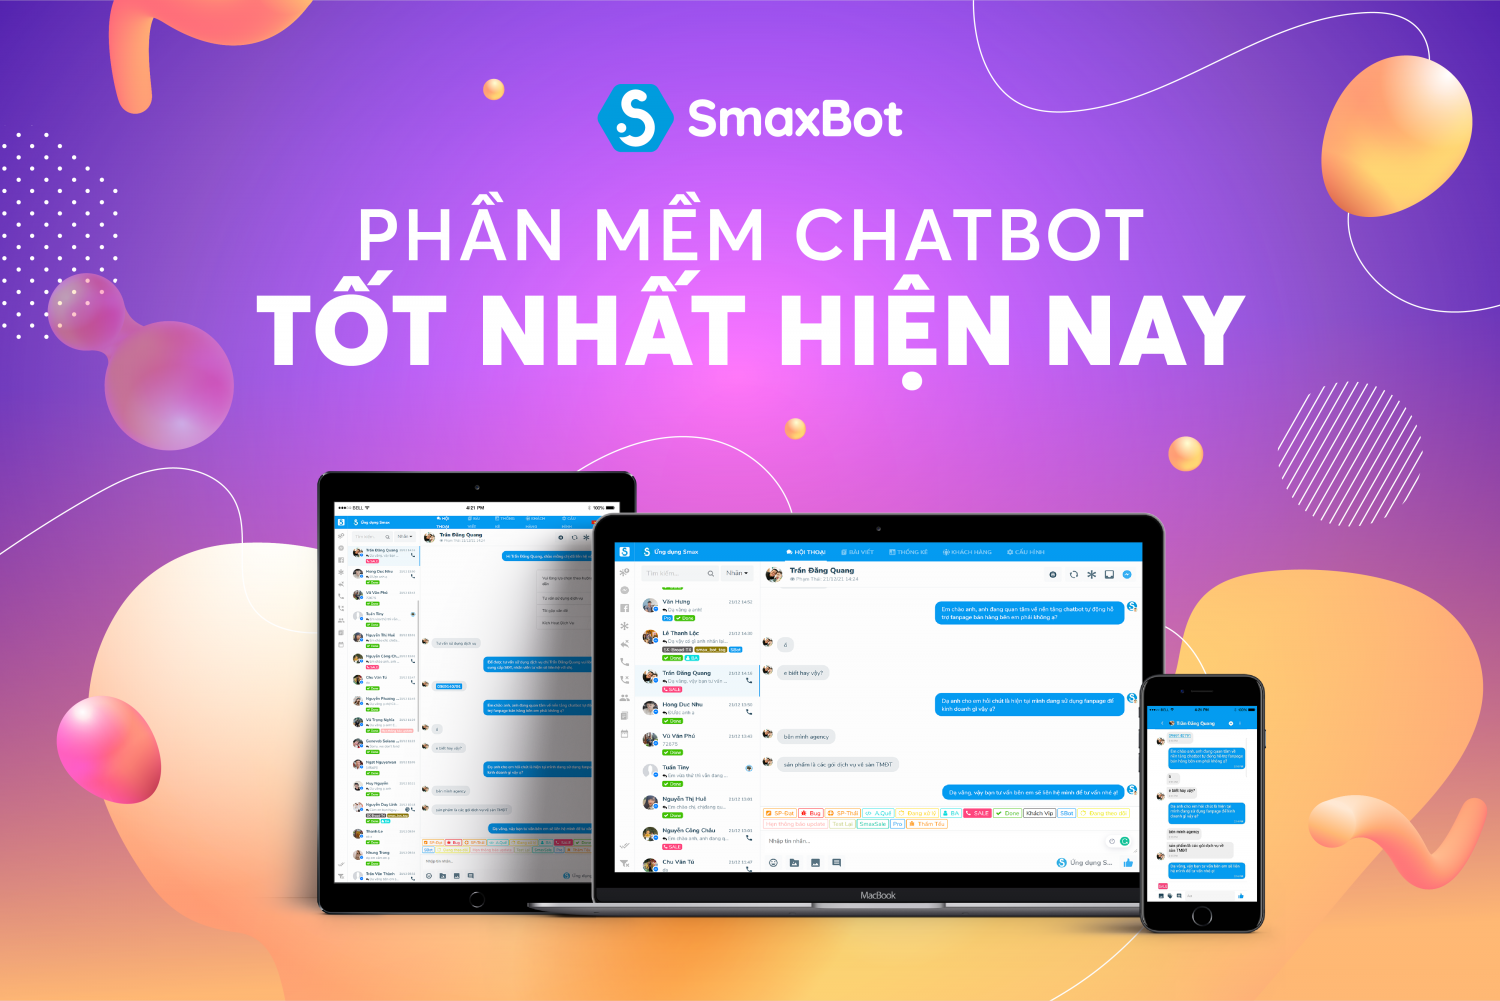 Smax - Phần mềm chatbot tốt nhất hiện nay